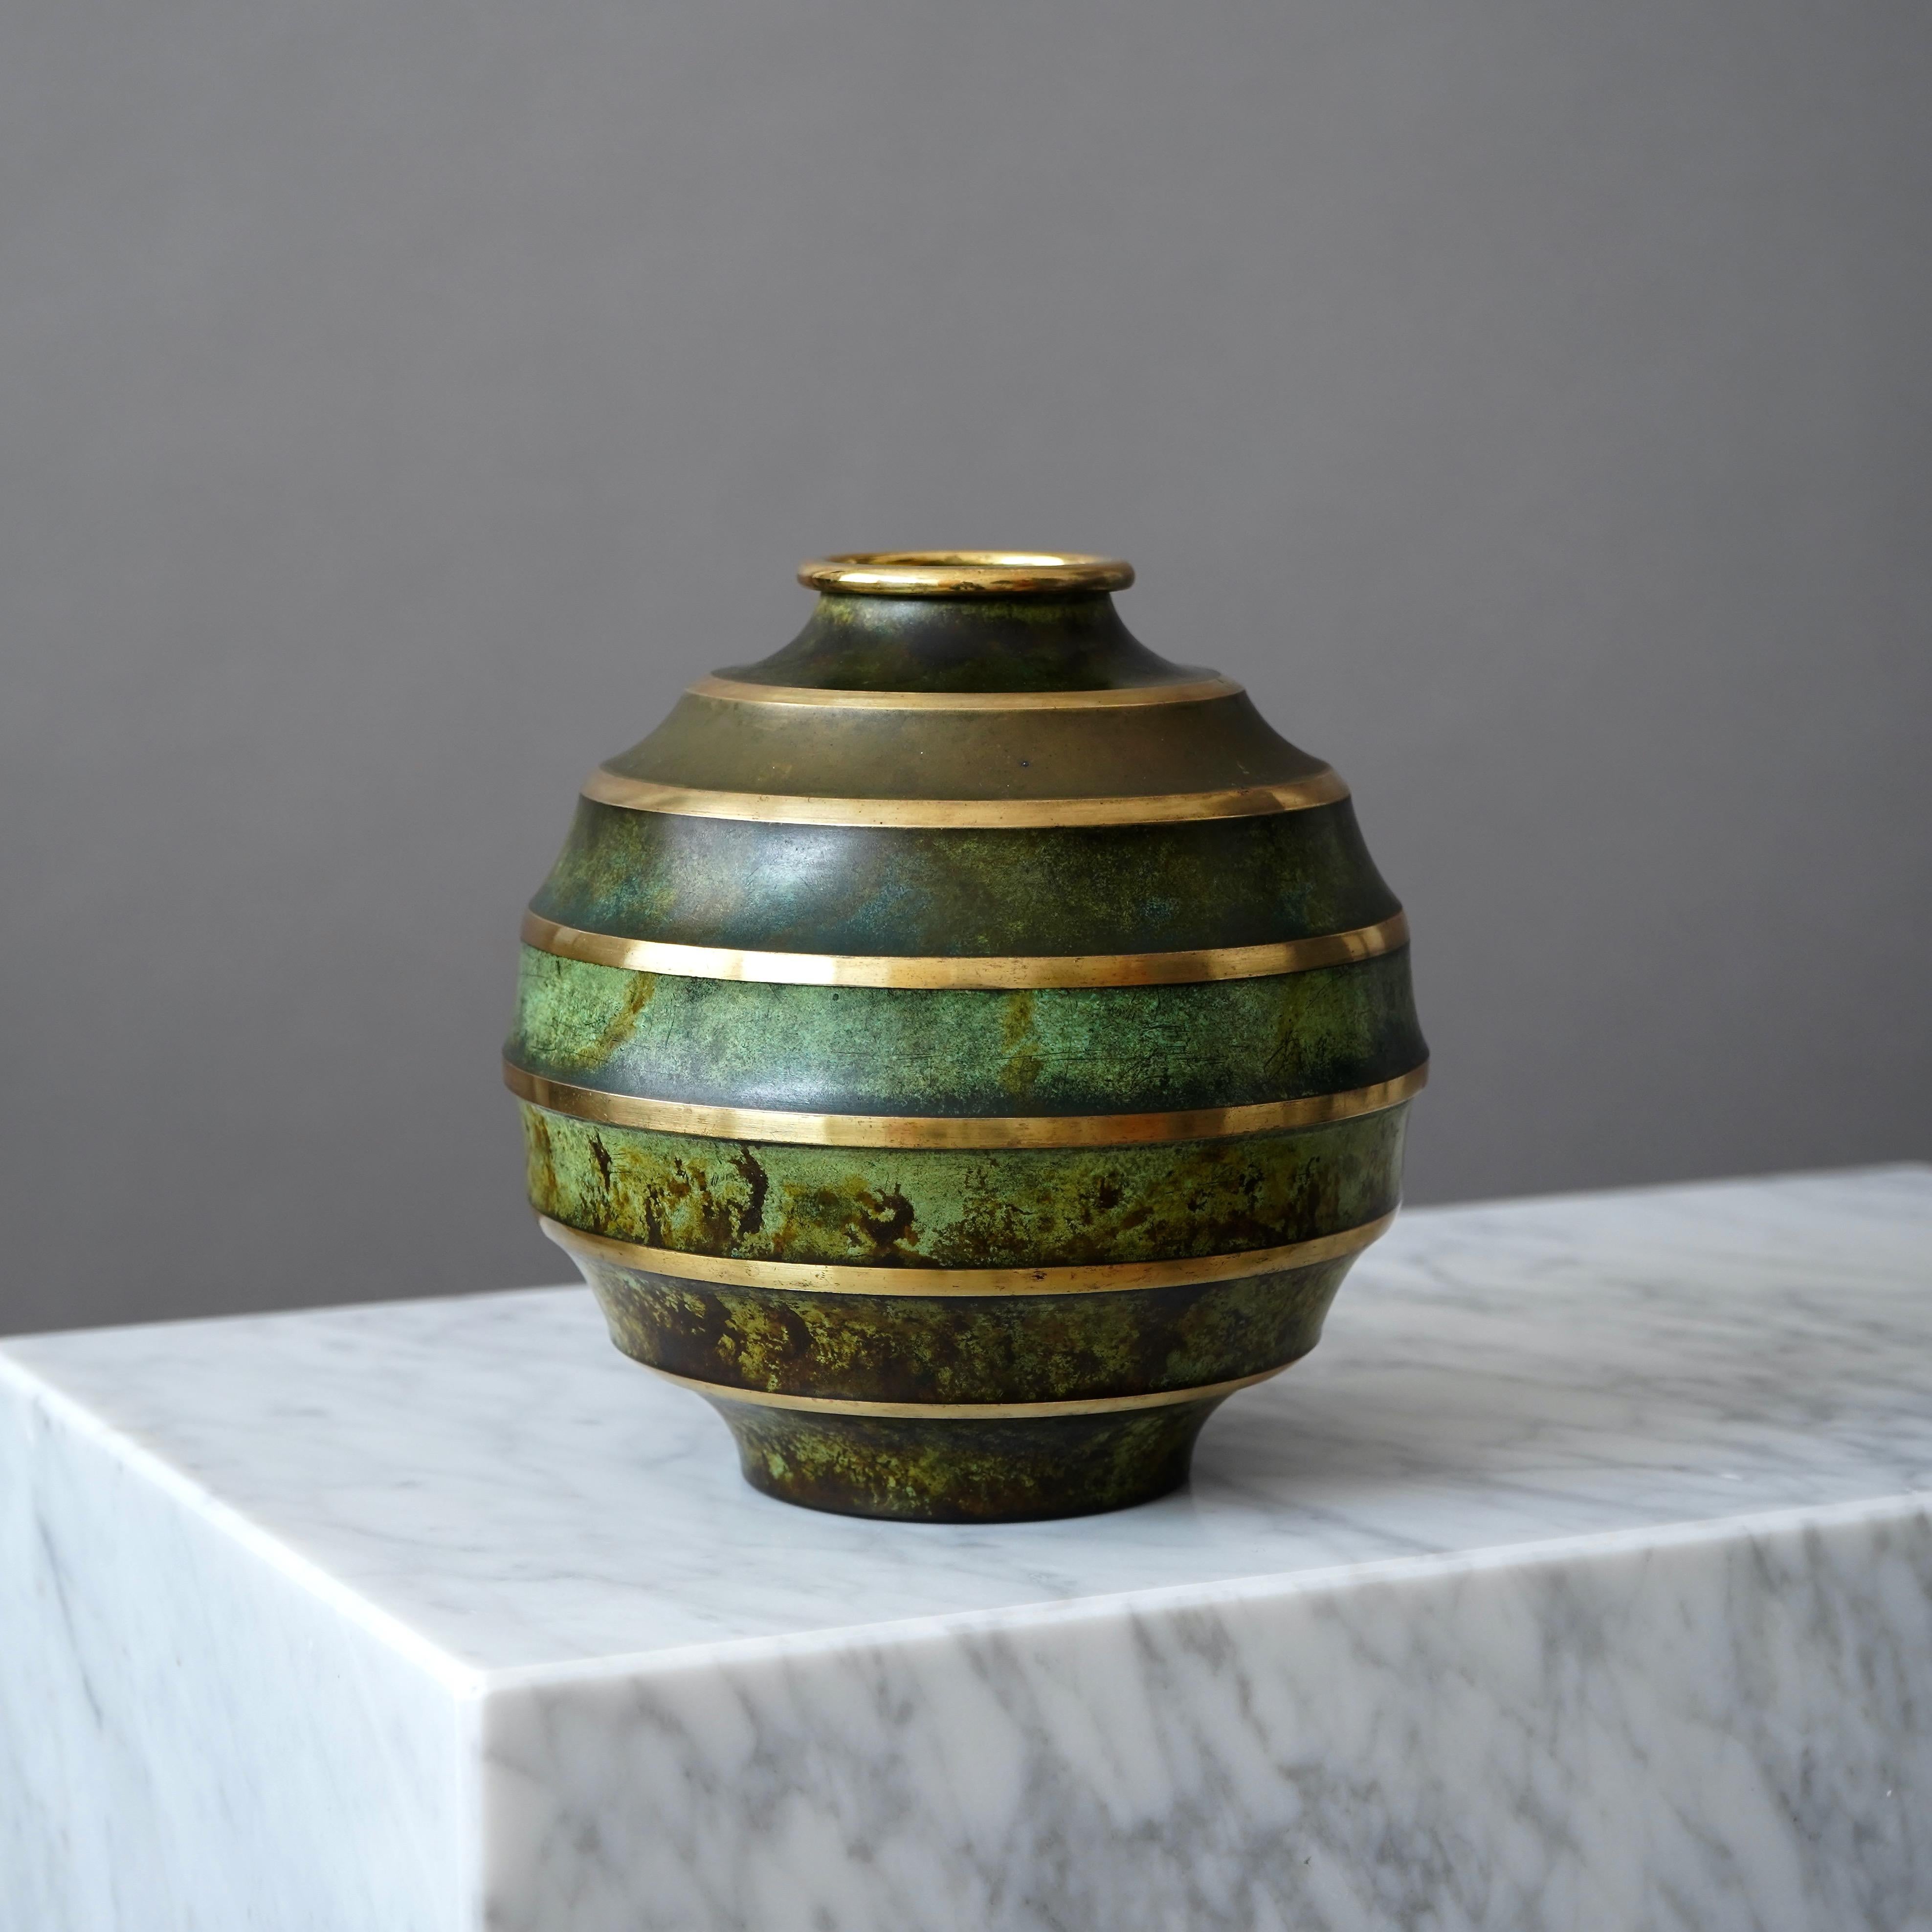 Un magnifique vase art déco en bronze avec une patine étonnante. 
Fabriqué par SVM, Svenska Metallverken AB, Suède, années 1930.  

Très bon état, avec seulement quelques légères rayures.
Estampillé 